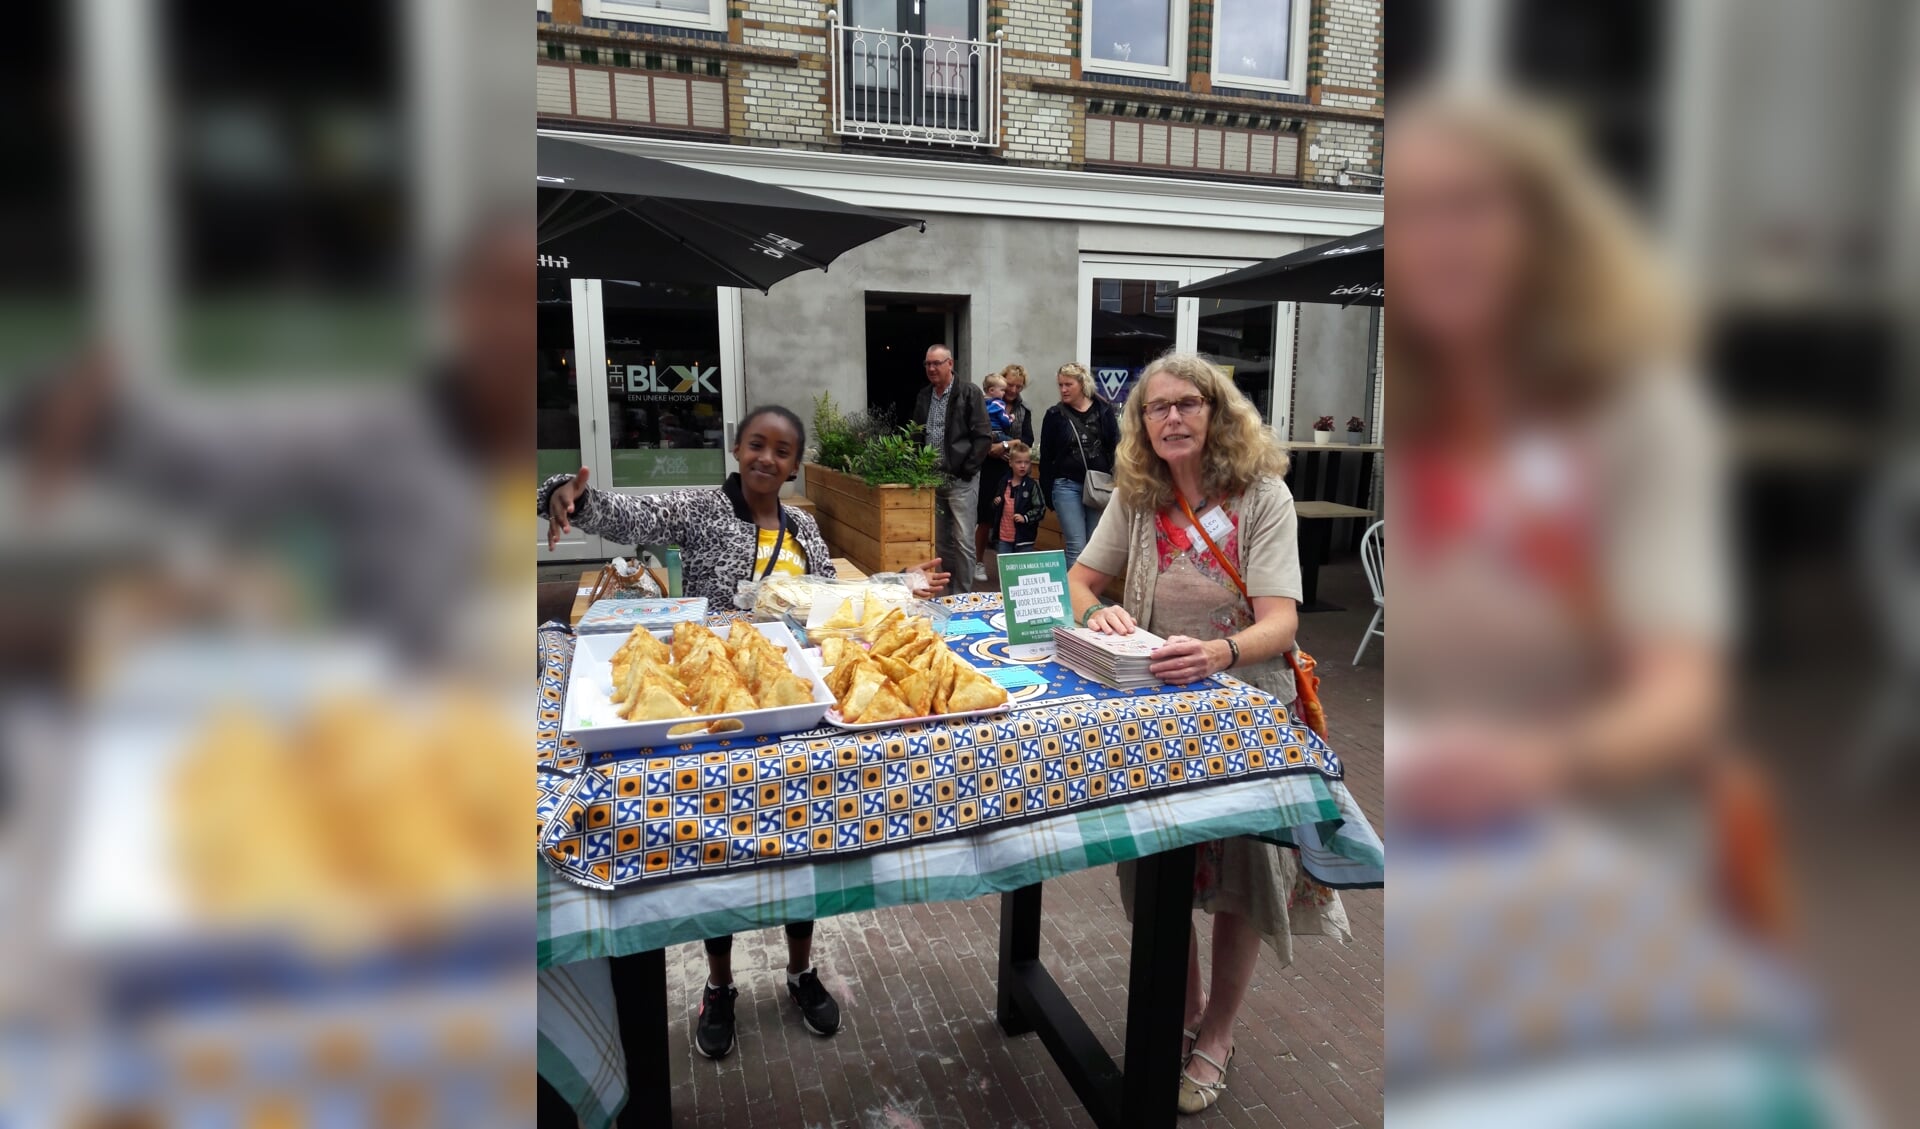 Vol trots laat een van de deelnemers aan het Taalcafé de baksels zien. Foto: eigen foto